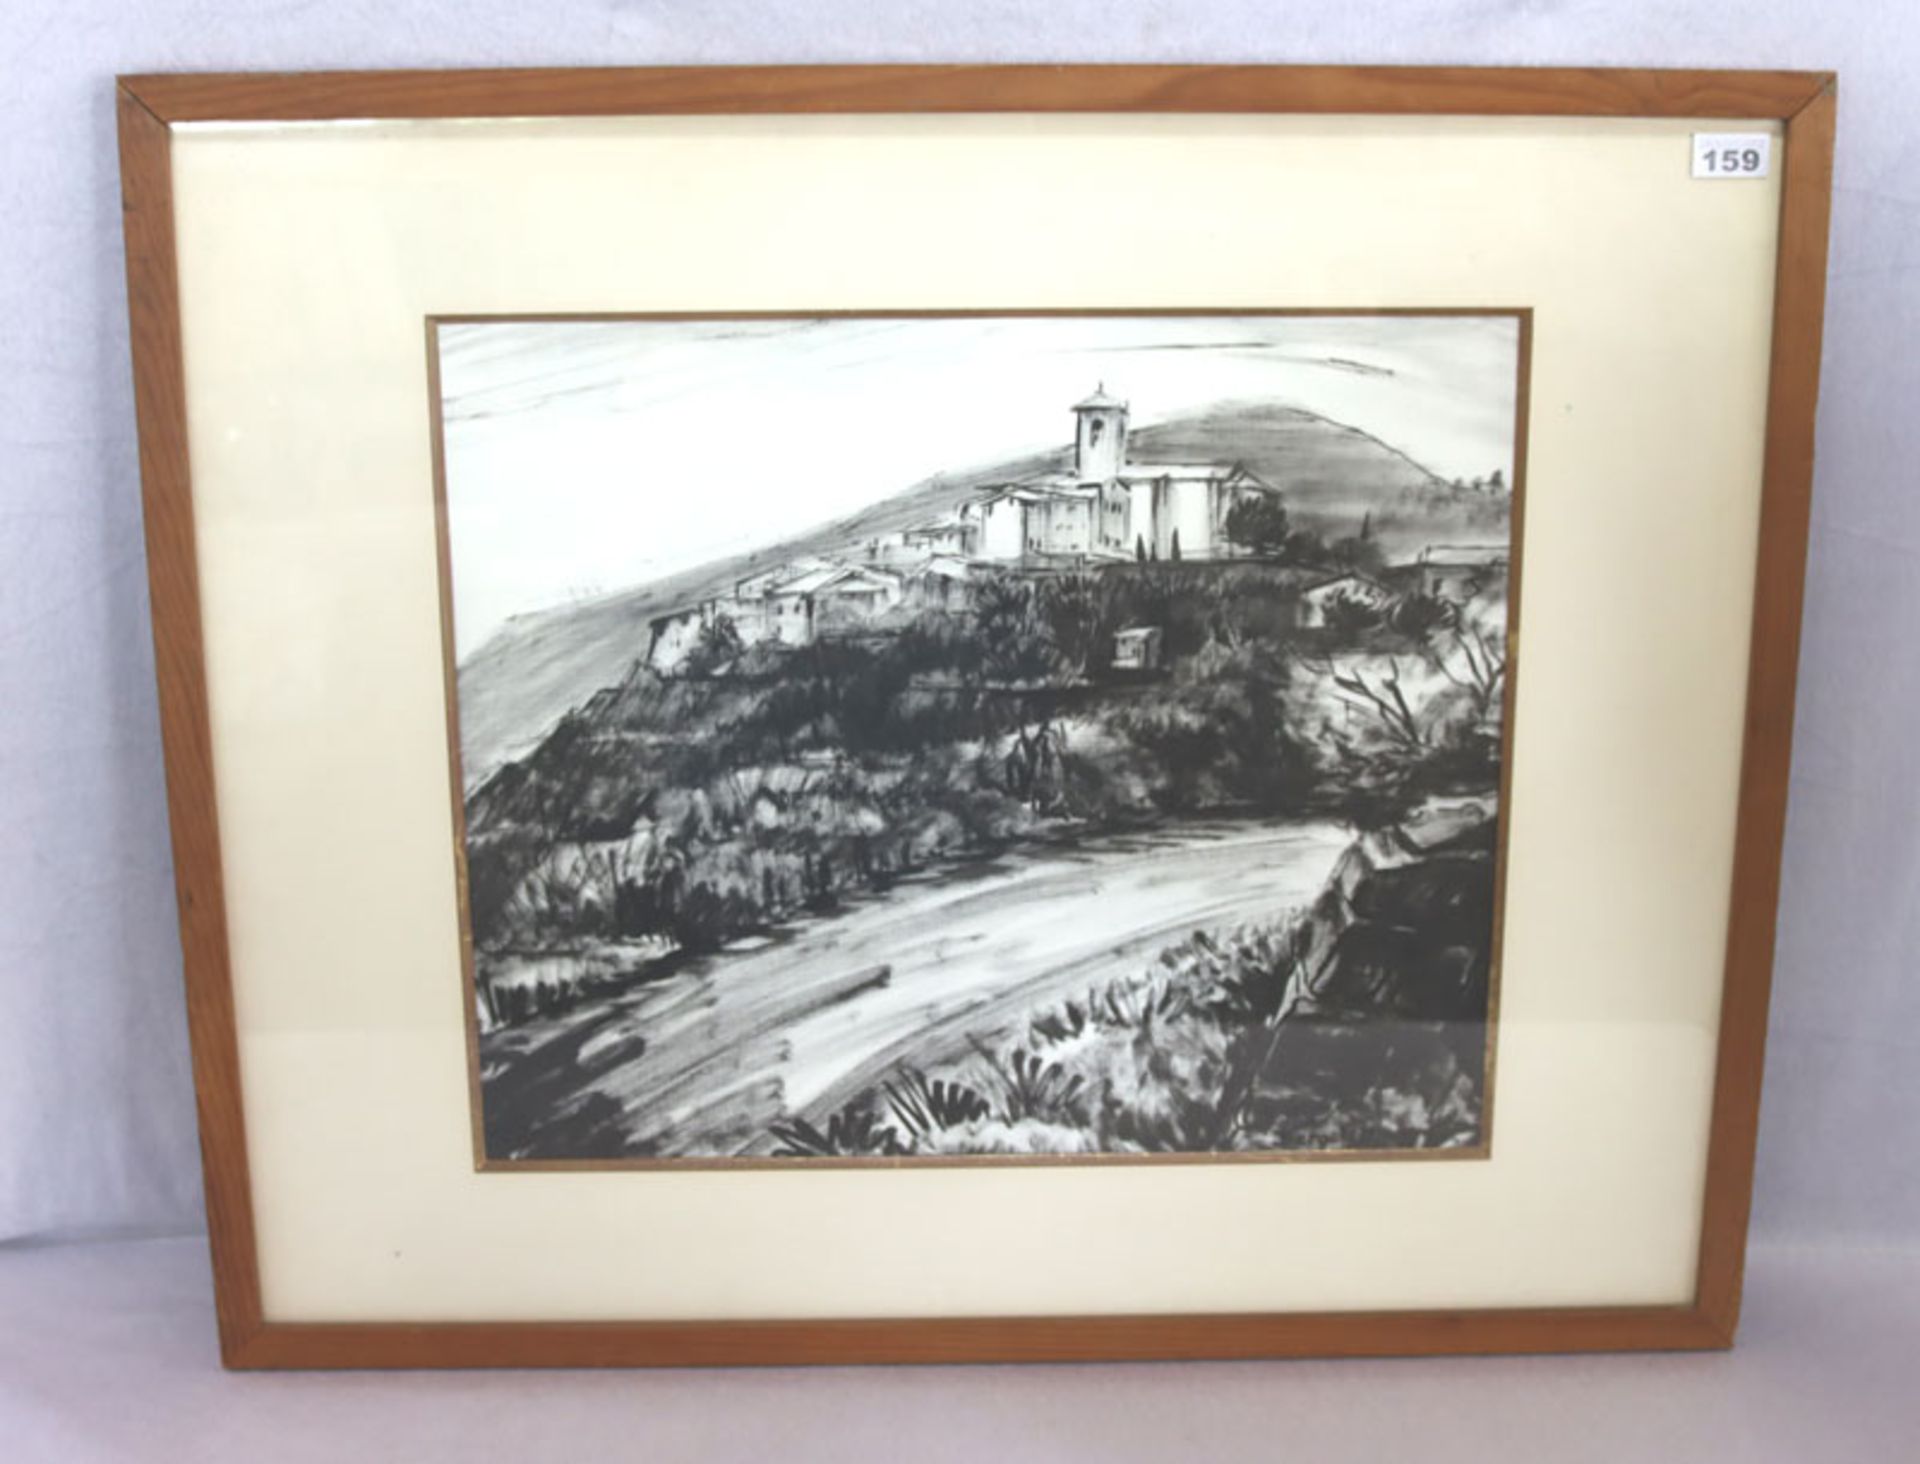 Kohlezeichnung 'Auribeau - Cote d'Azur', signiert Bergelin, Éliane Bergelin, * 1916, mit